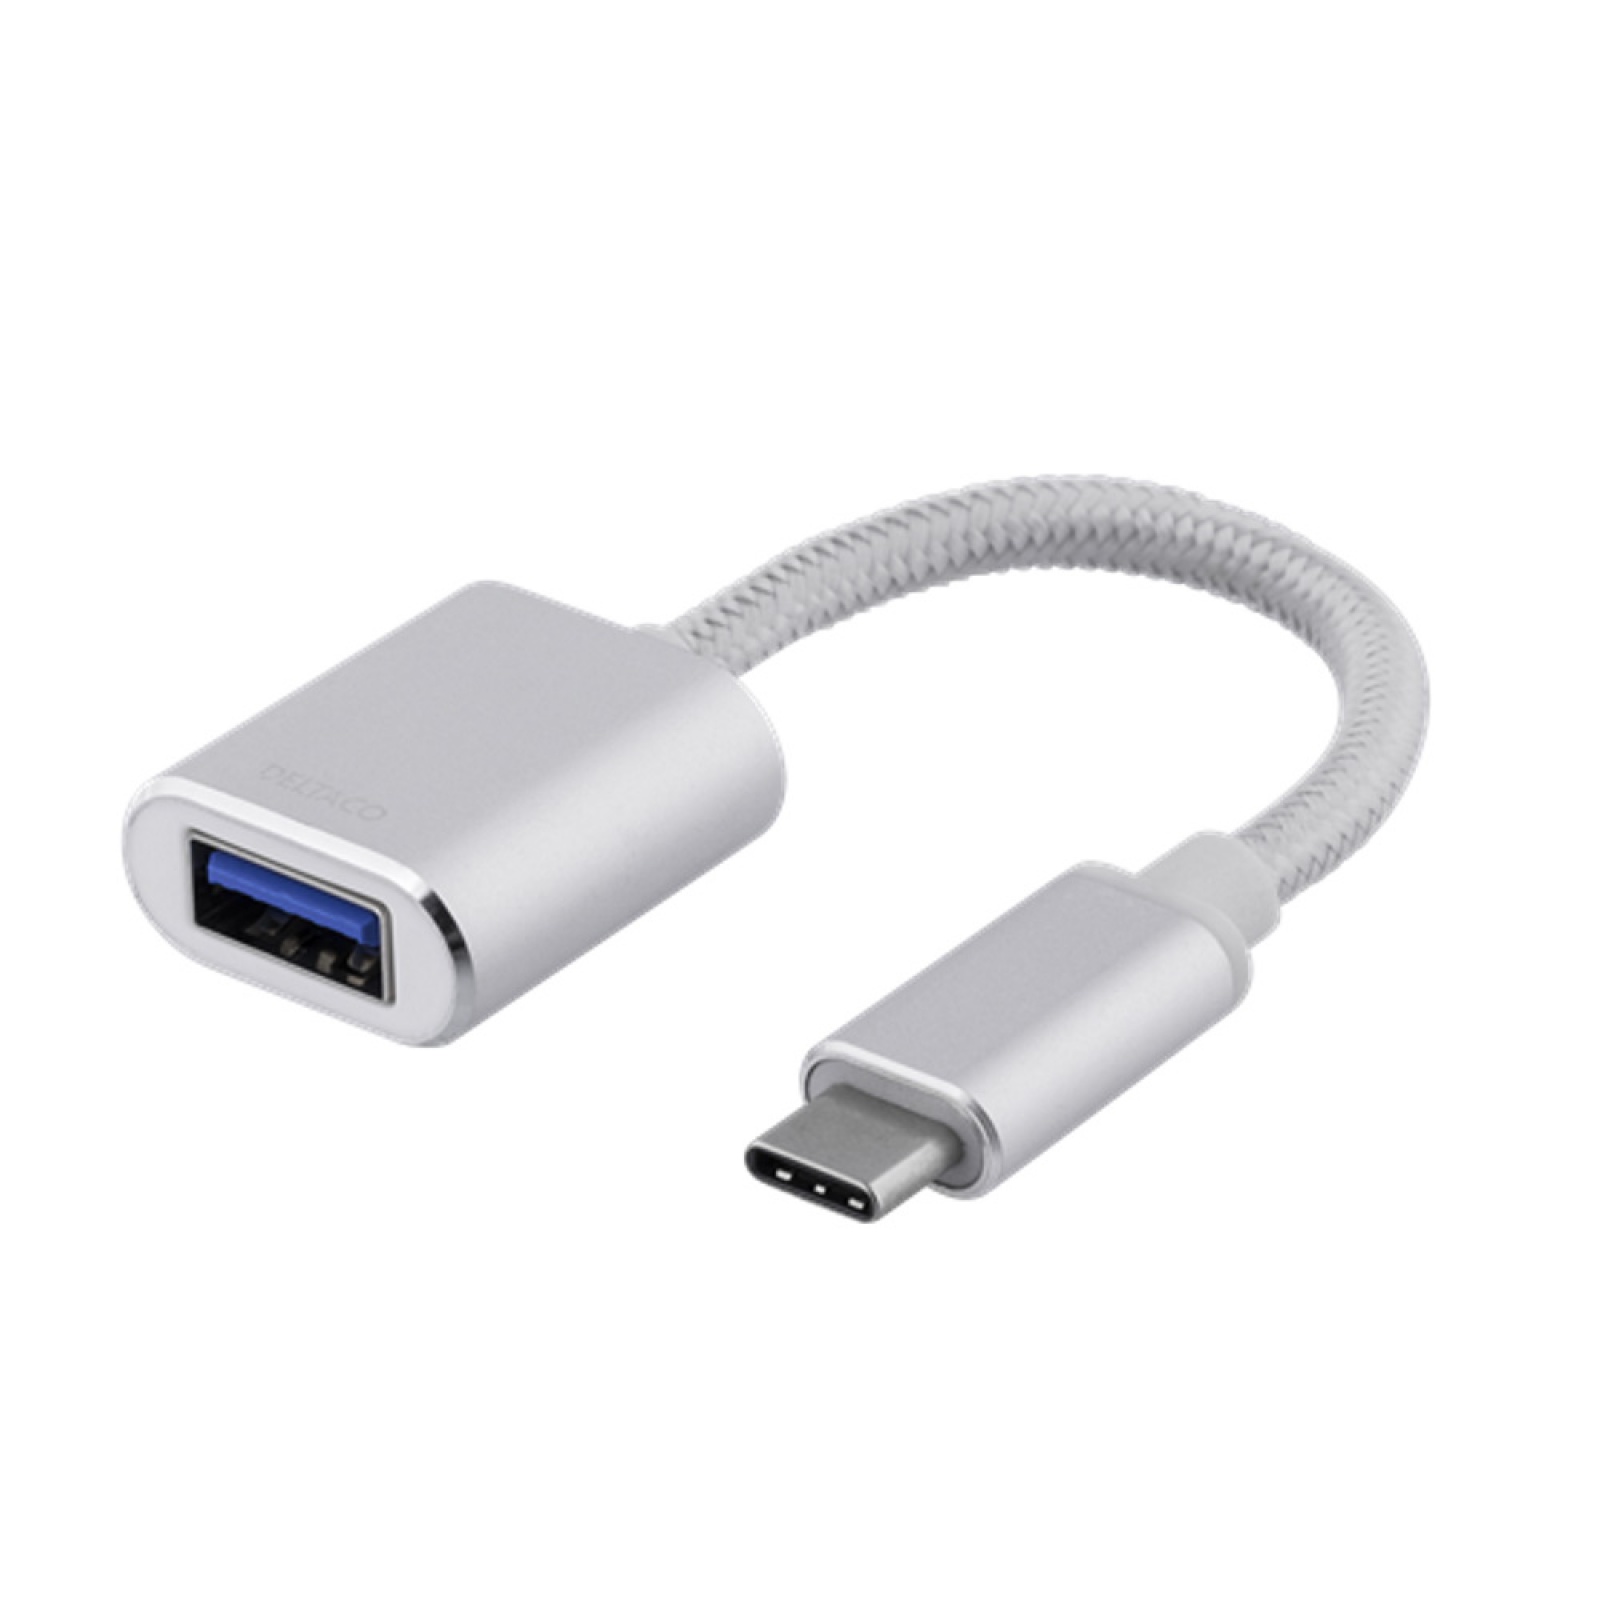 Tolk Få Sydøst Deltaco USBC-1276 USB C to USB A OTG Adaptor